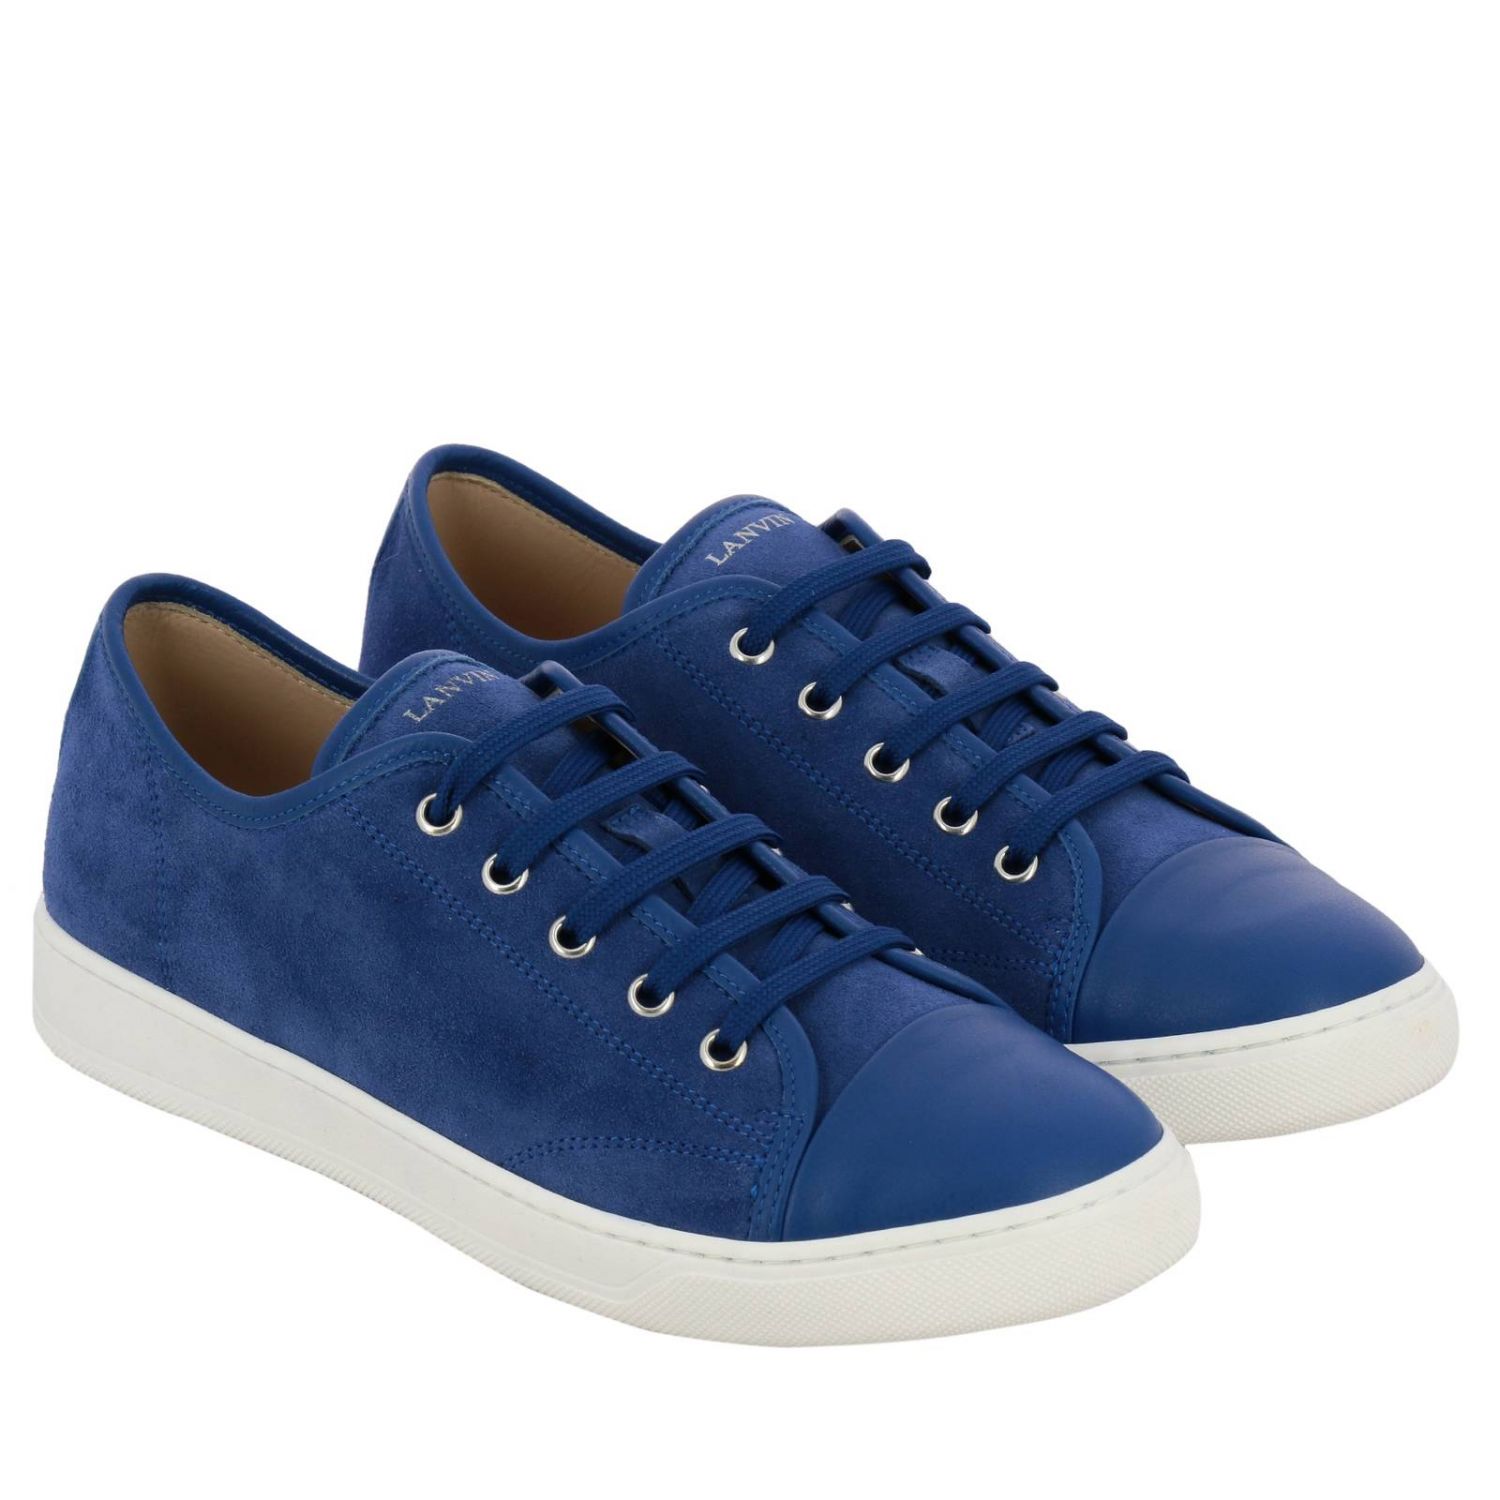 Shoes kids Lanvin | Shoes Lanvin Kids Royal Blue | Shoes Lanvin 60005 ...